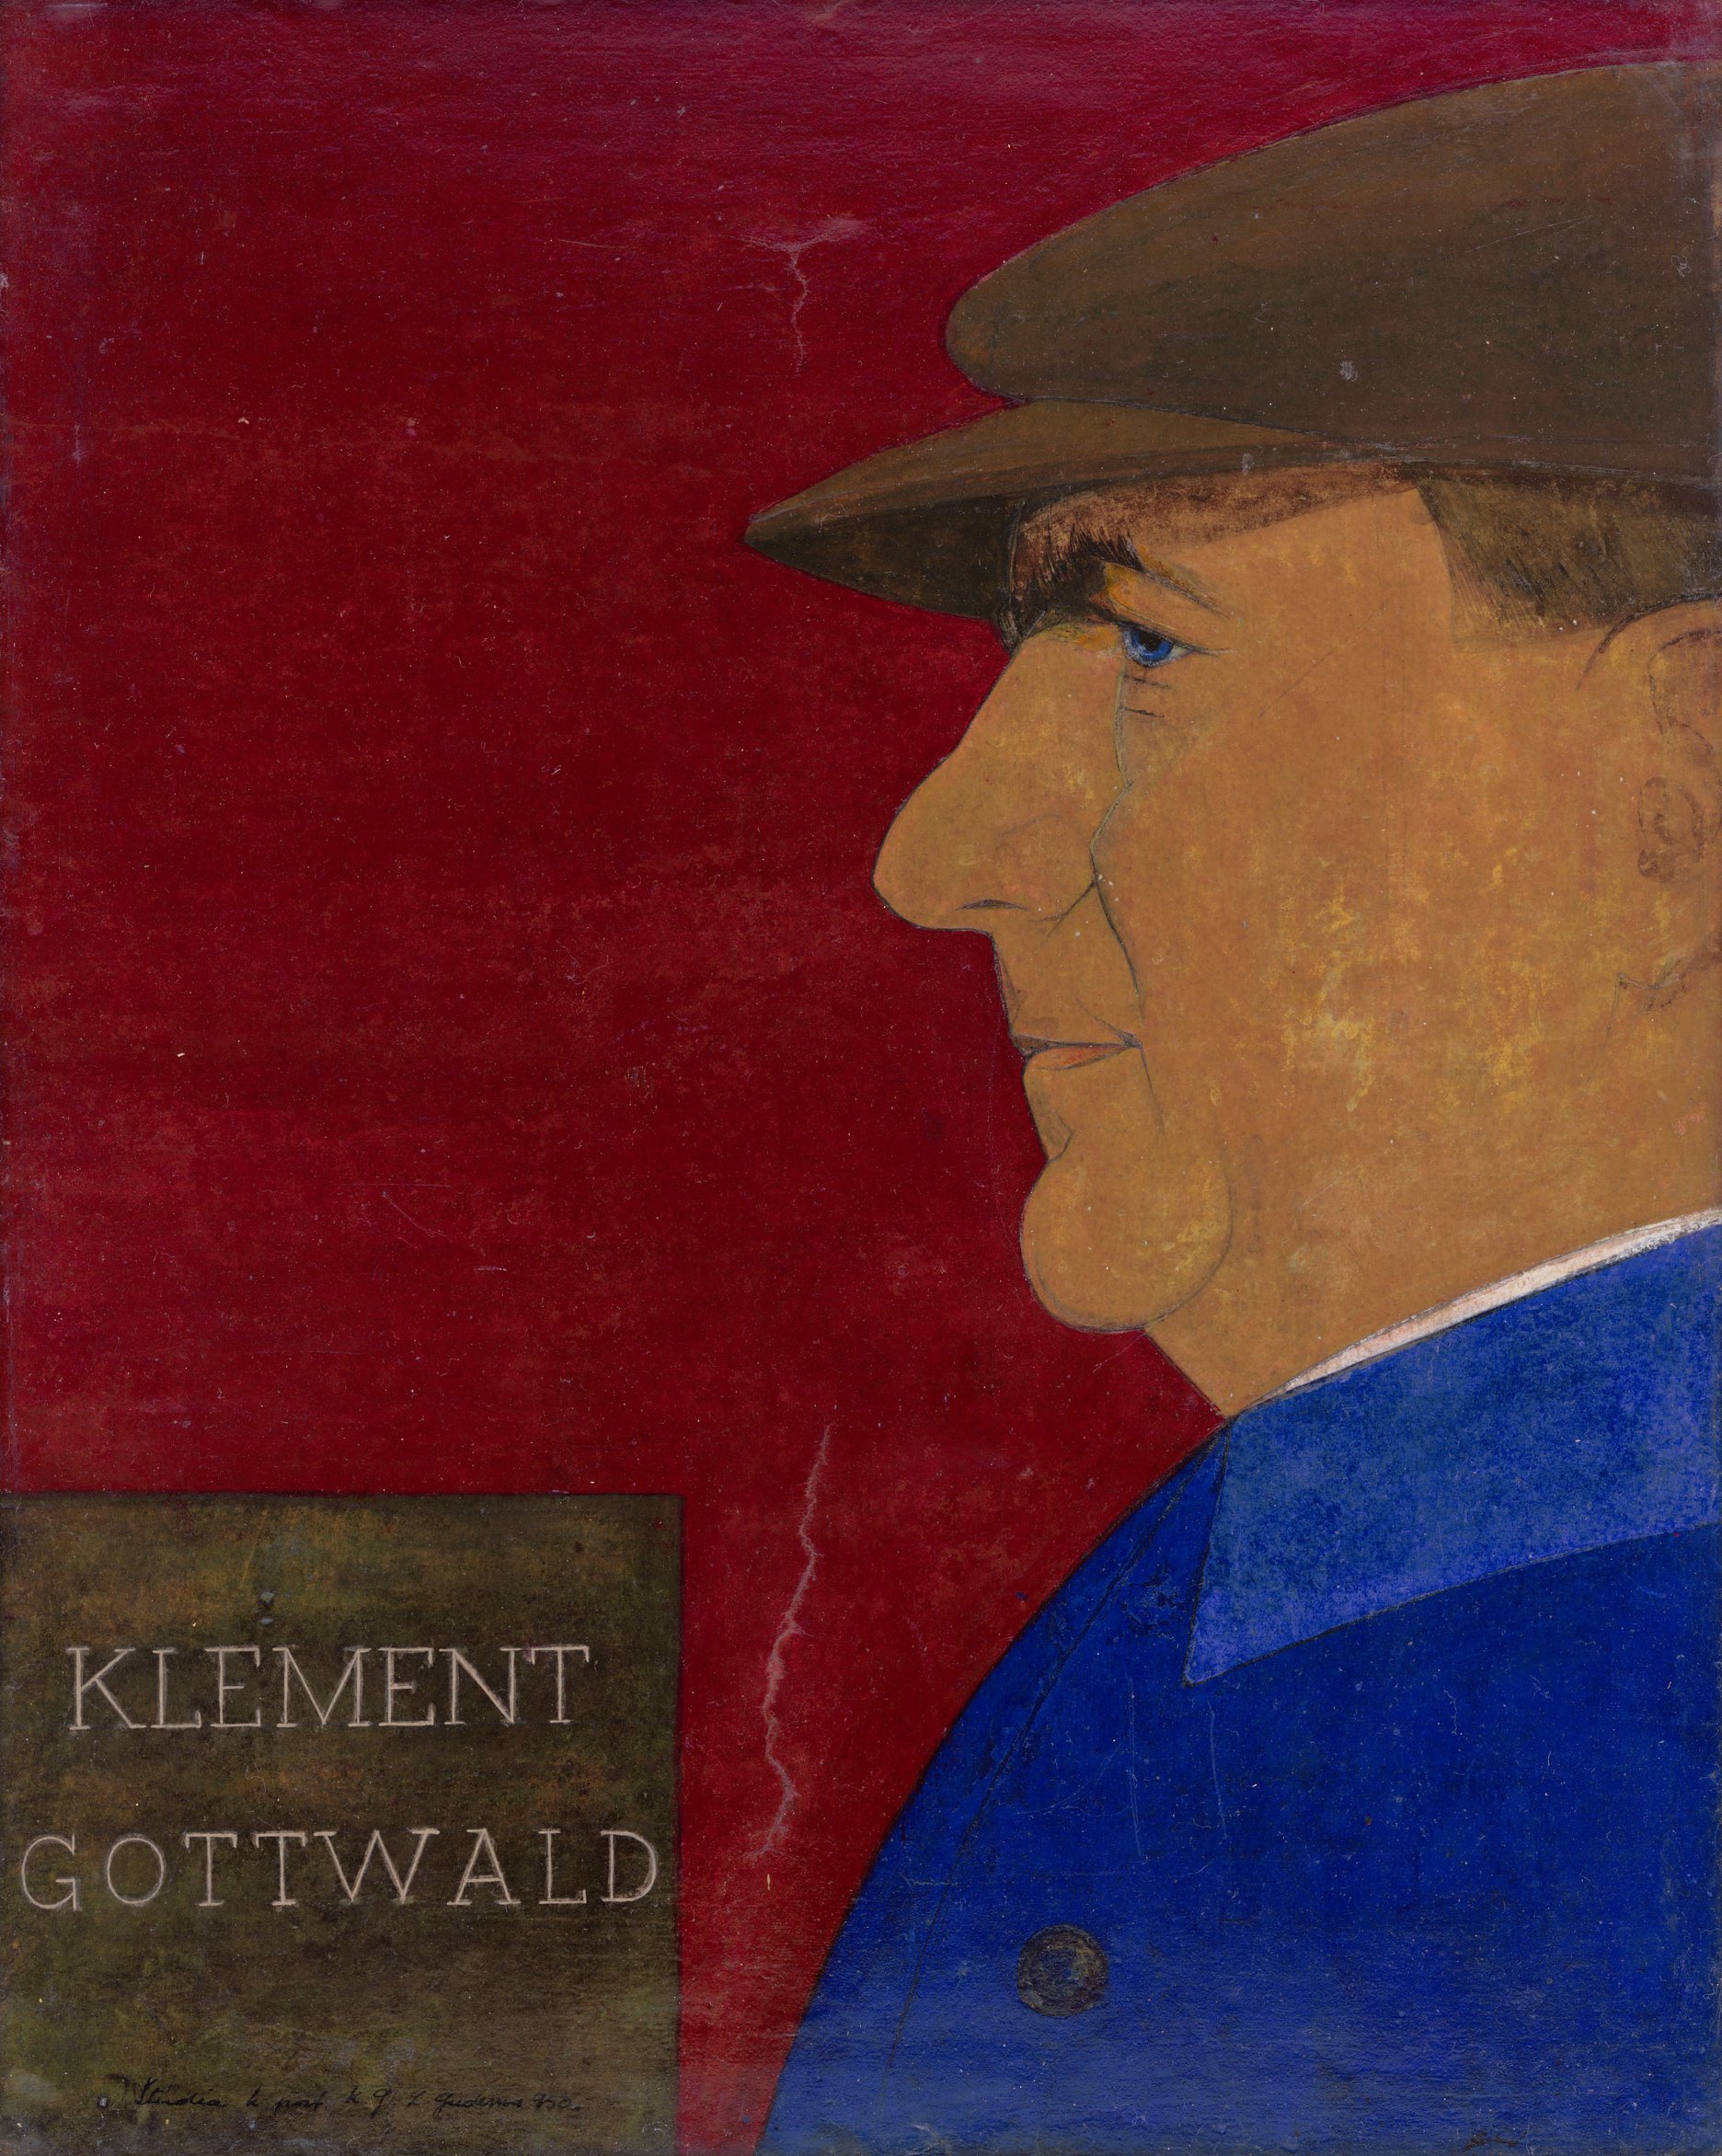 Ladislav Guderna: Klement Gottwald. 1950. SNG, Bratislava